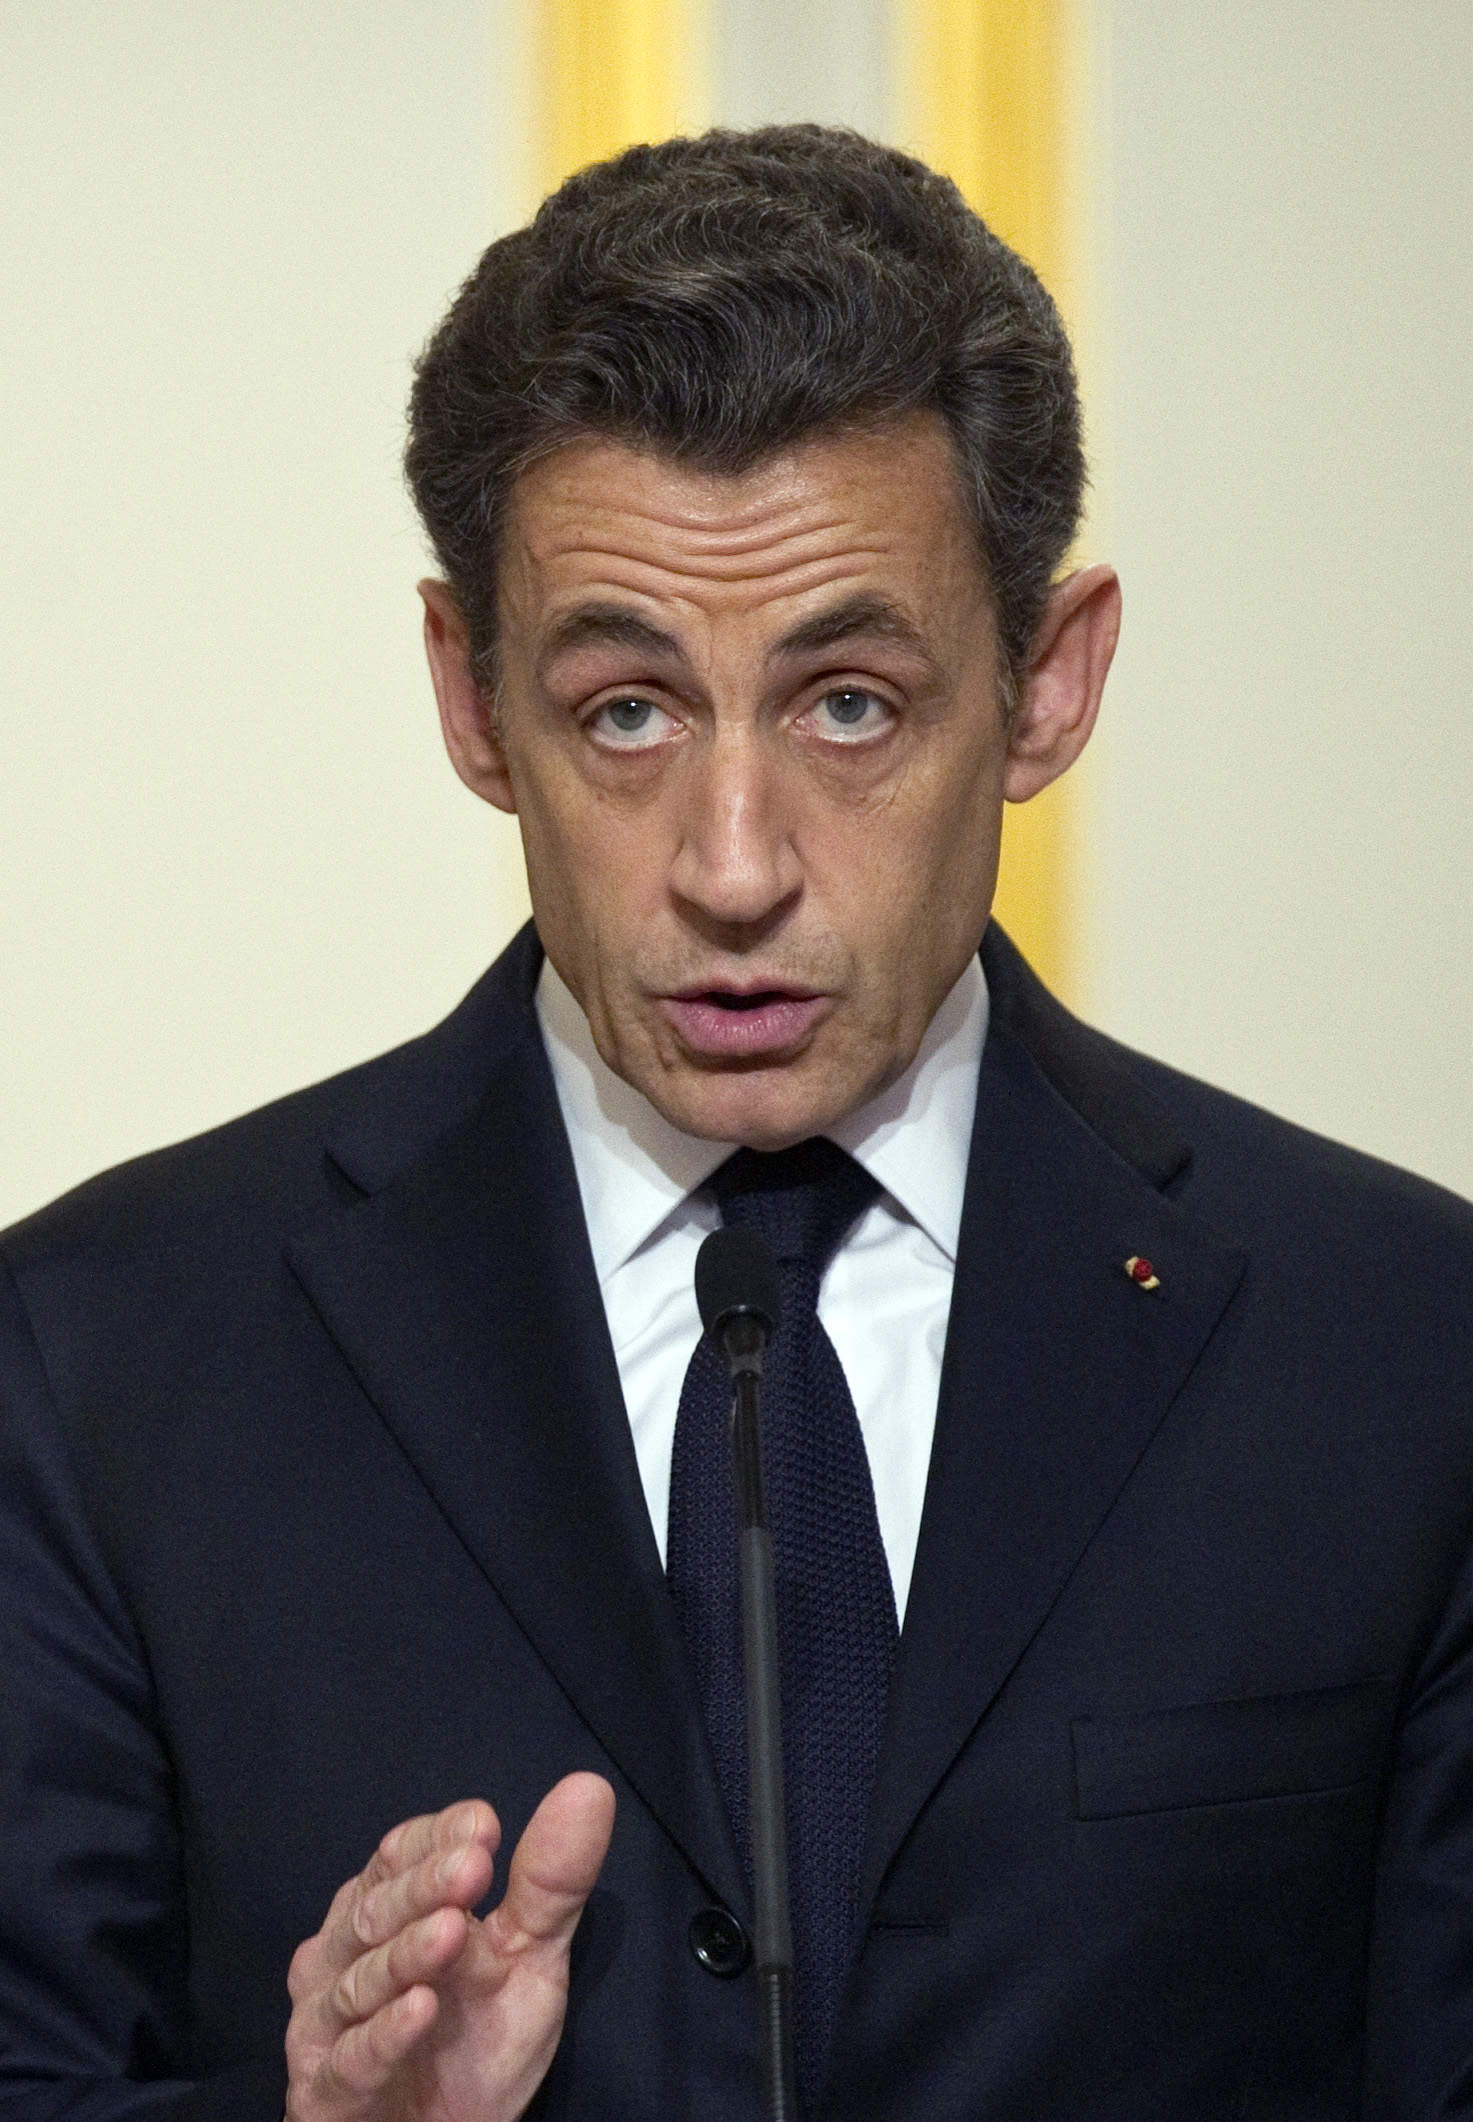 Sarkozy säger "Non" till Nato.